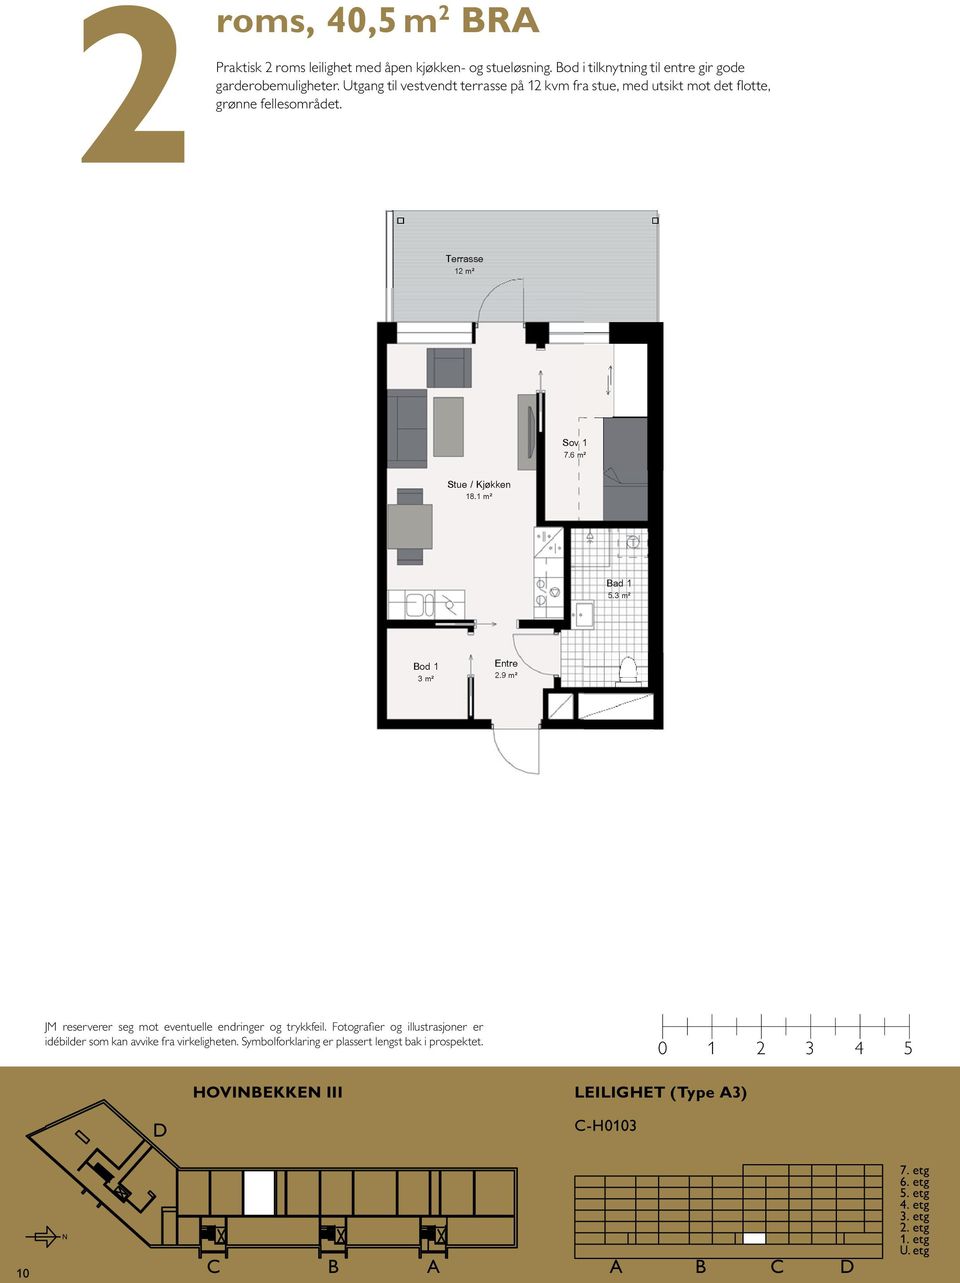 Utgang til vestvendt terrasse P- på rom: 12 kvm fra stue, 37,5m2 med utsikt mot det flotte, 39 1 HOVIBEKKE III Leilighet type Terrasse 12 m² 7.6 m² 18.1 m² 5. 2.